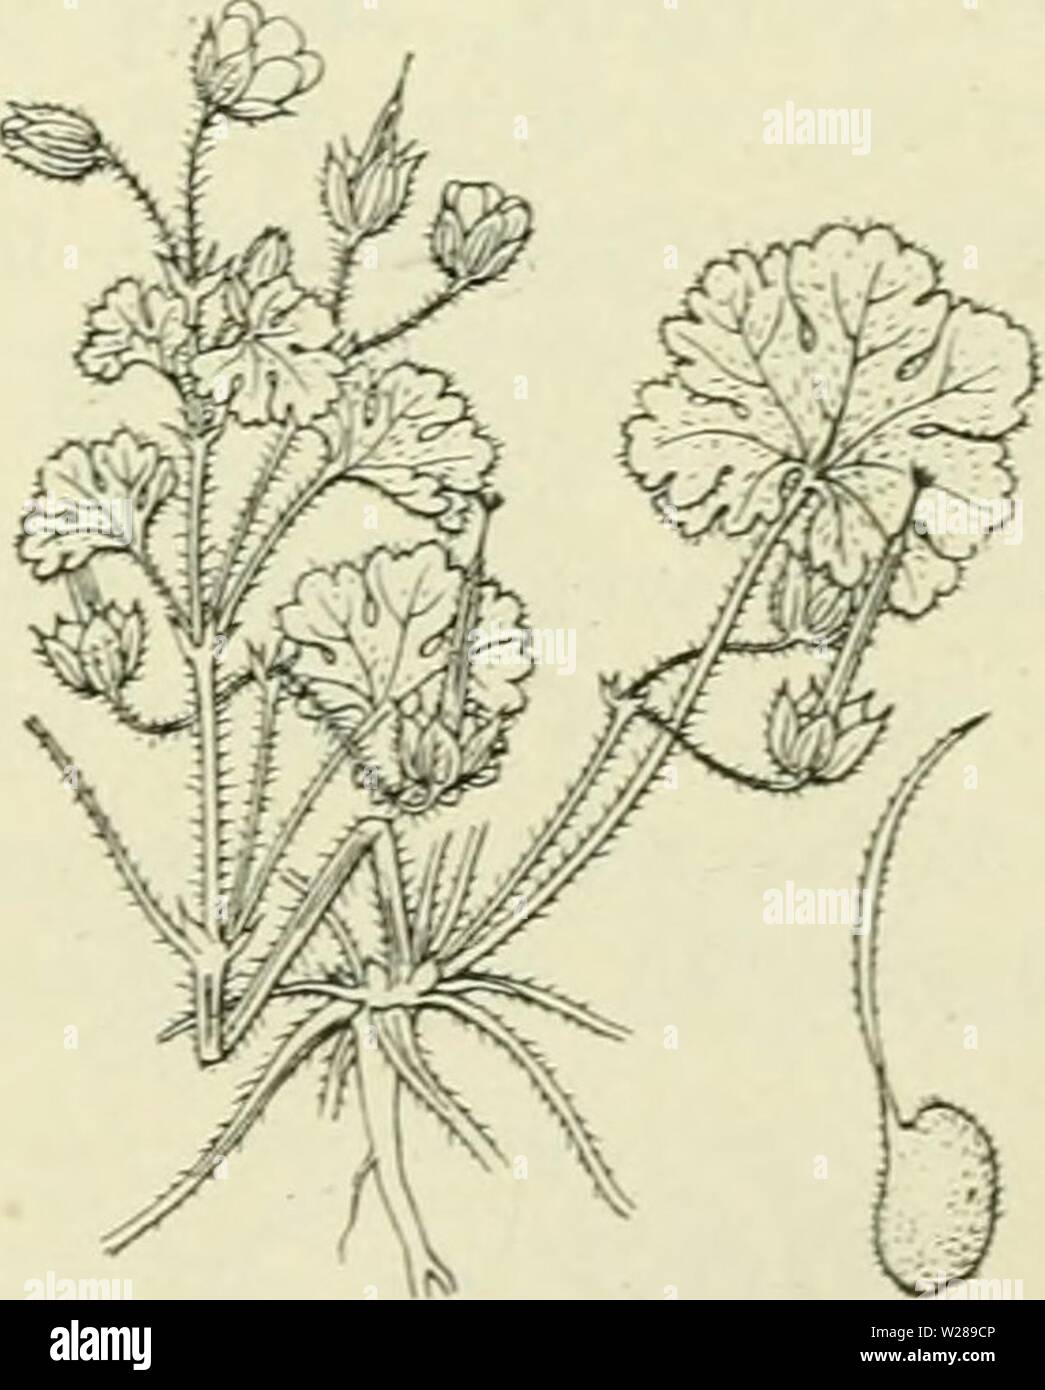 Archive image from page 392 of De flora van Nederland (1909-11). De flora van Nederland  defloravannederl02heuk Year: 1909-11.  Geranium silvaticum Fig. 435. Of G. rotundifÃ³lium -; L. R o n d b 1 a d-o oievaarsbek (fig. 436). Deze soort komt nog al met G. pusillum en O. molle overeen, doch wijkt o.a. af door de iets grootere, roseroode, ongedeelde kroonbladen en de slechts gelobde bladen. Uit den penwortel komen uitgespreid vertakte, zacht behaarde stengels, die liggend, opstijgend of rechtopgaand zijn. De geheele plant is door afstaande haren zacht behaard en daartusschen komen naar boven kl Stock Photo